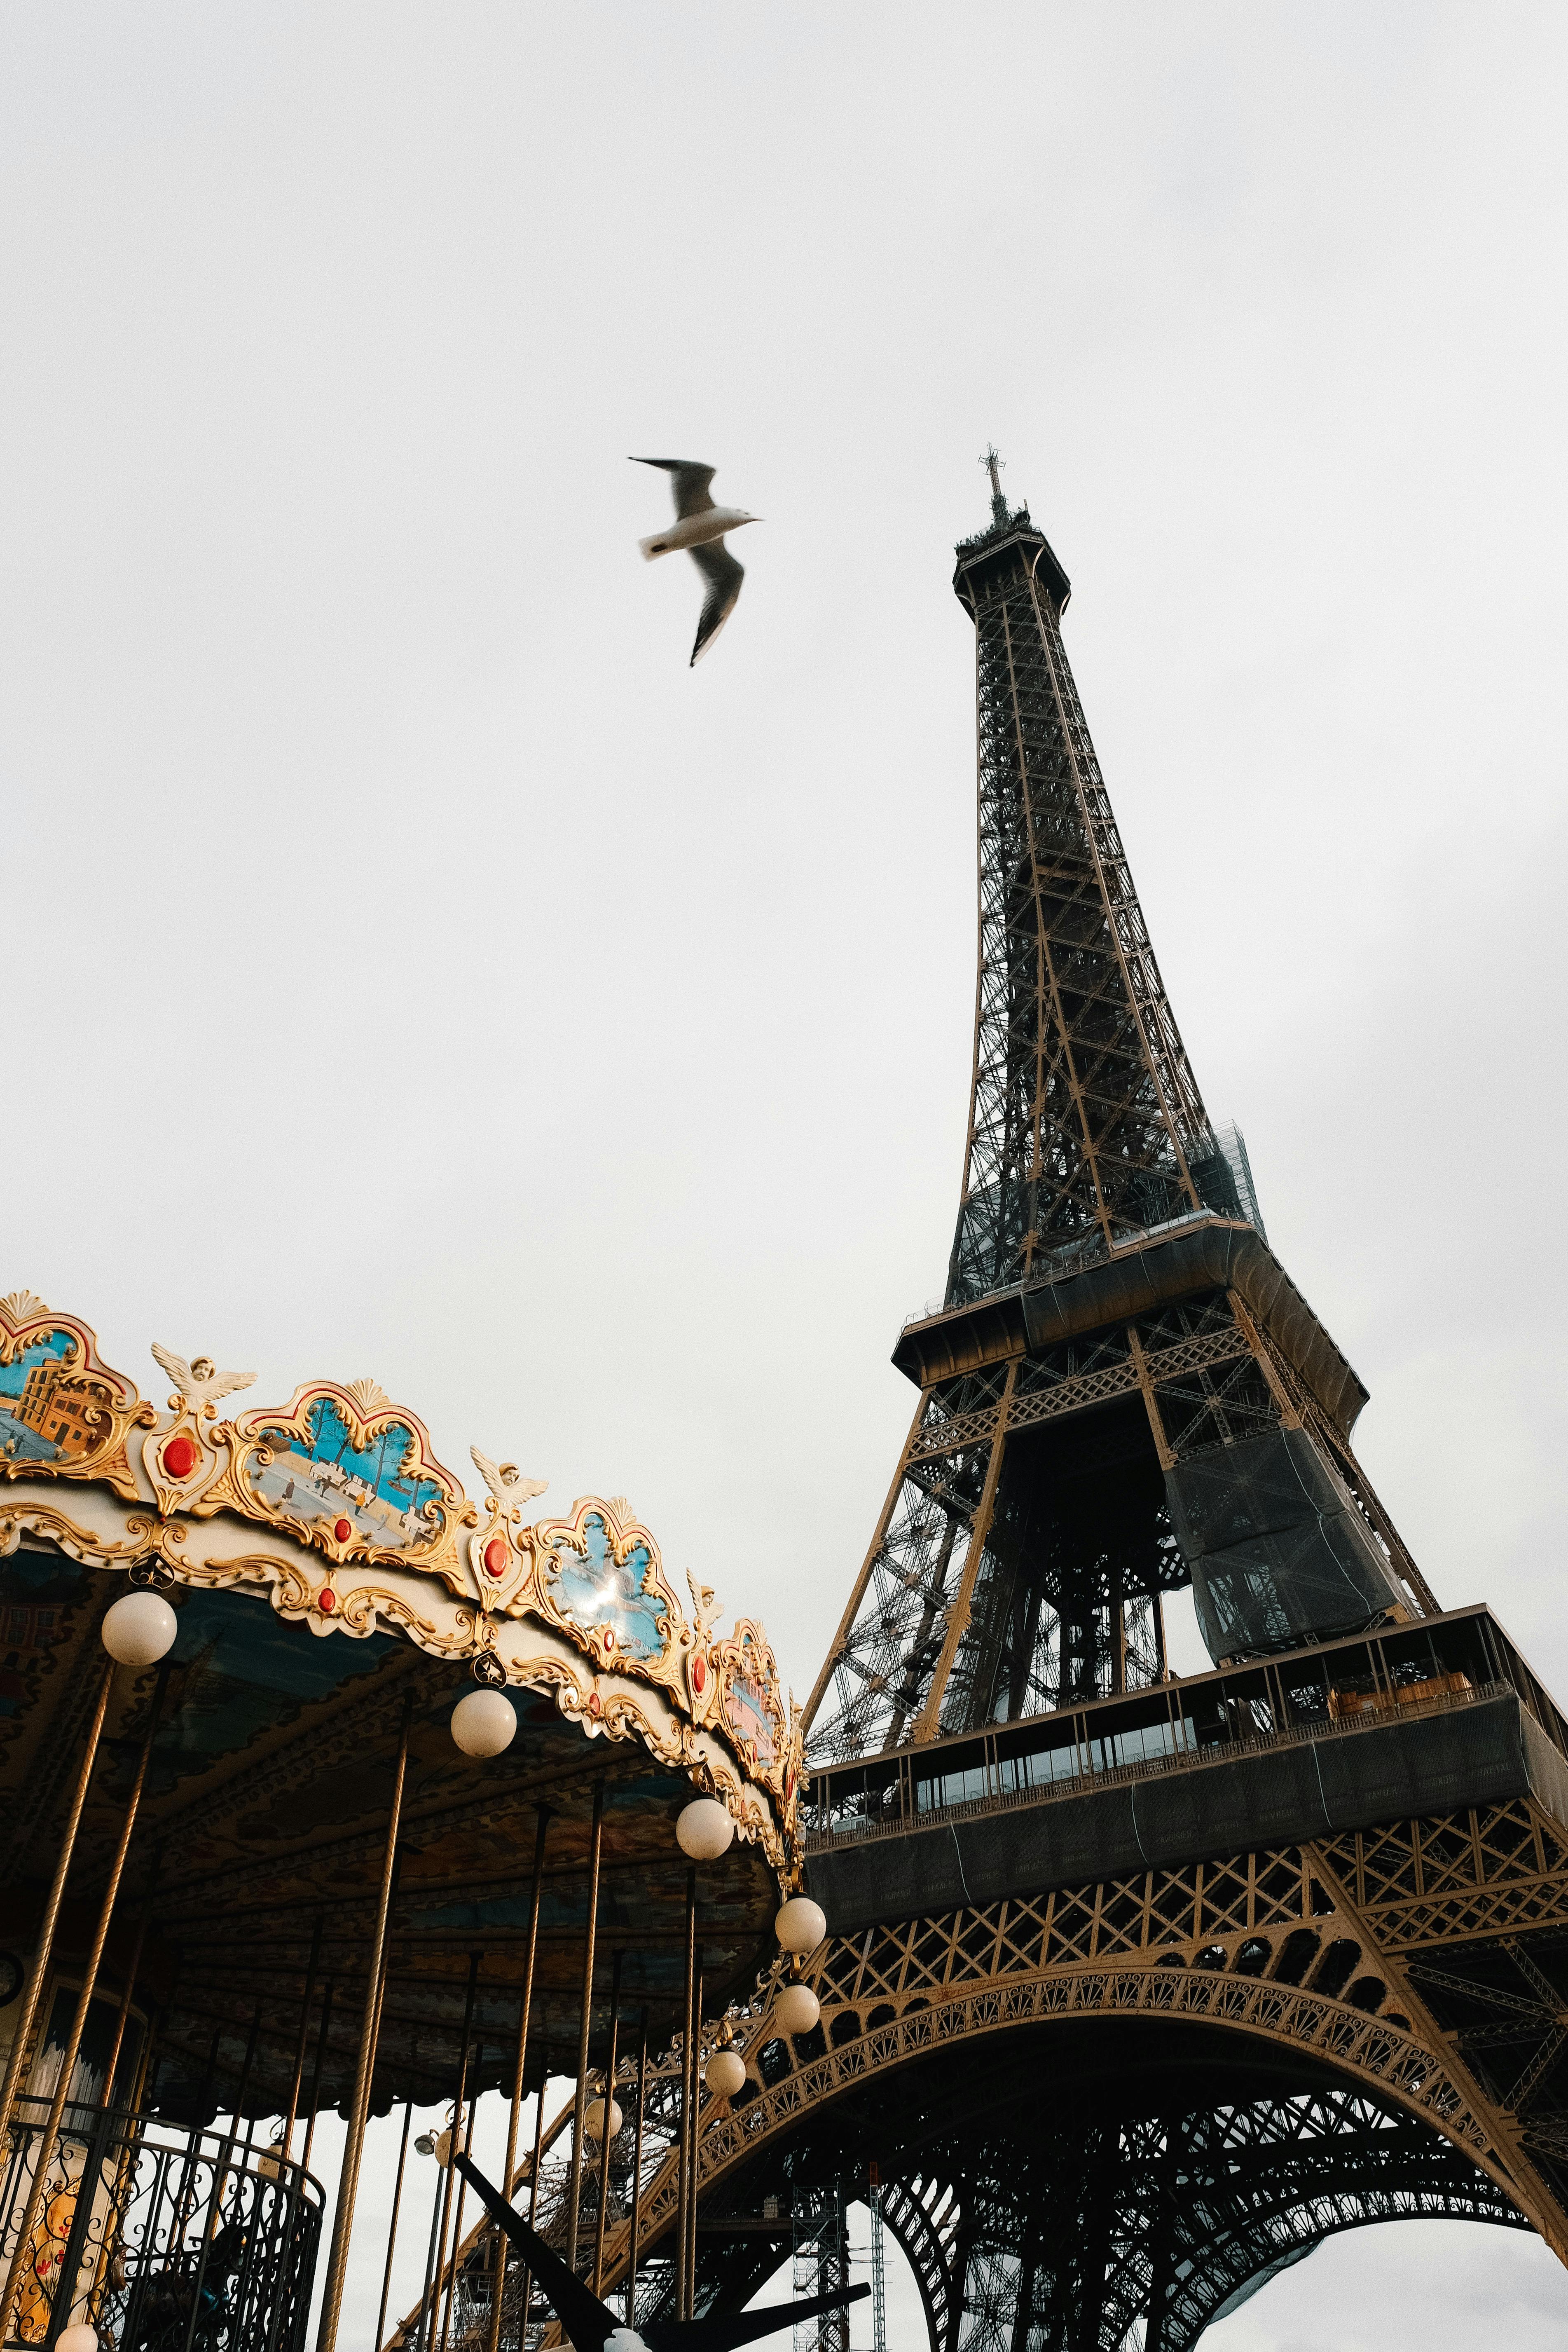 Hé lộ bí mật về tháp Eiffel nổi tiếng thế giới